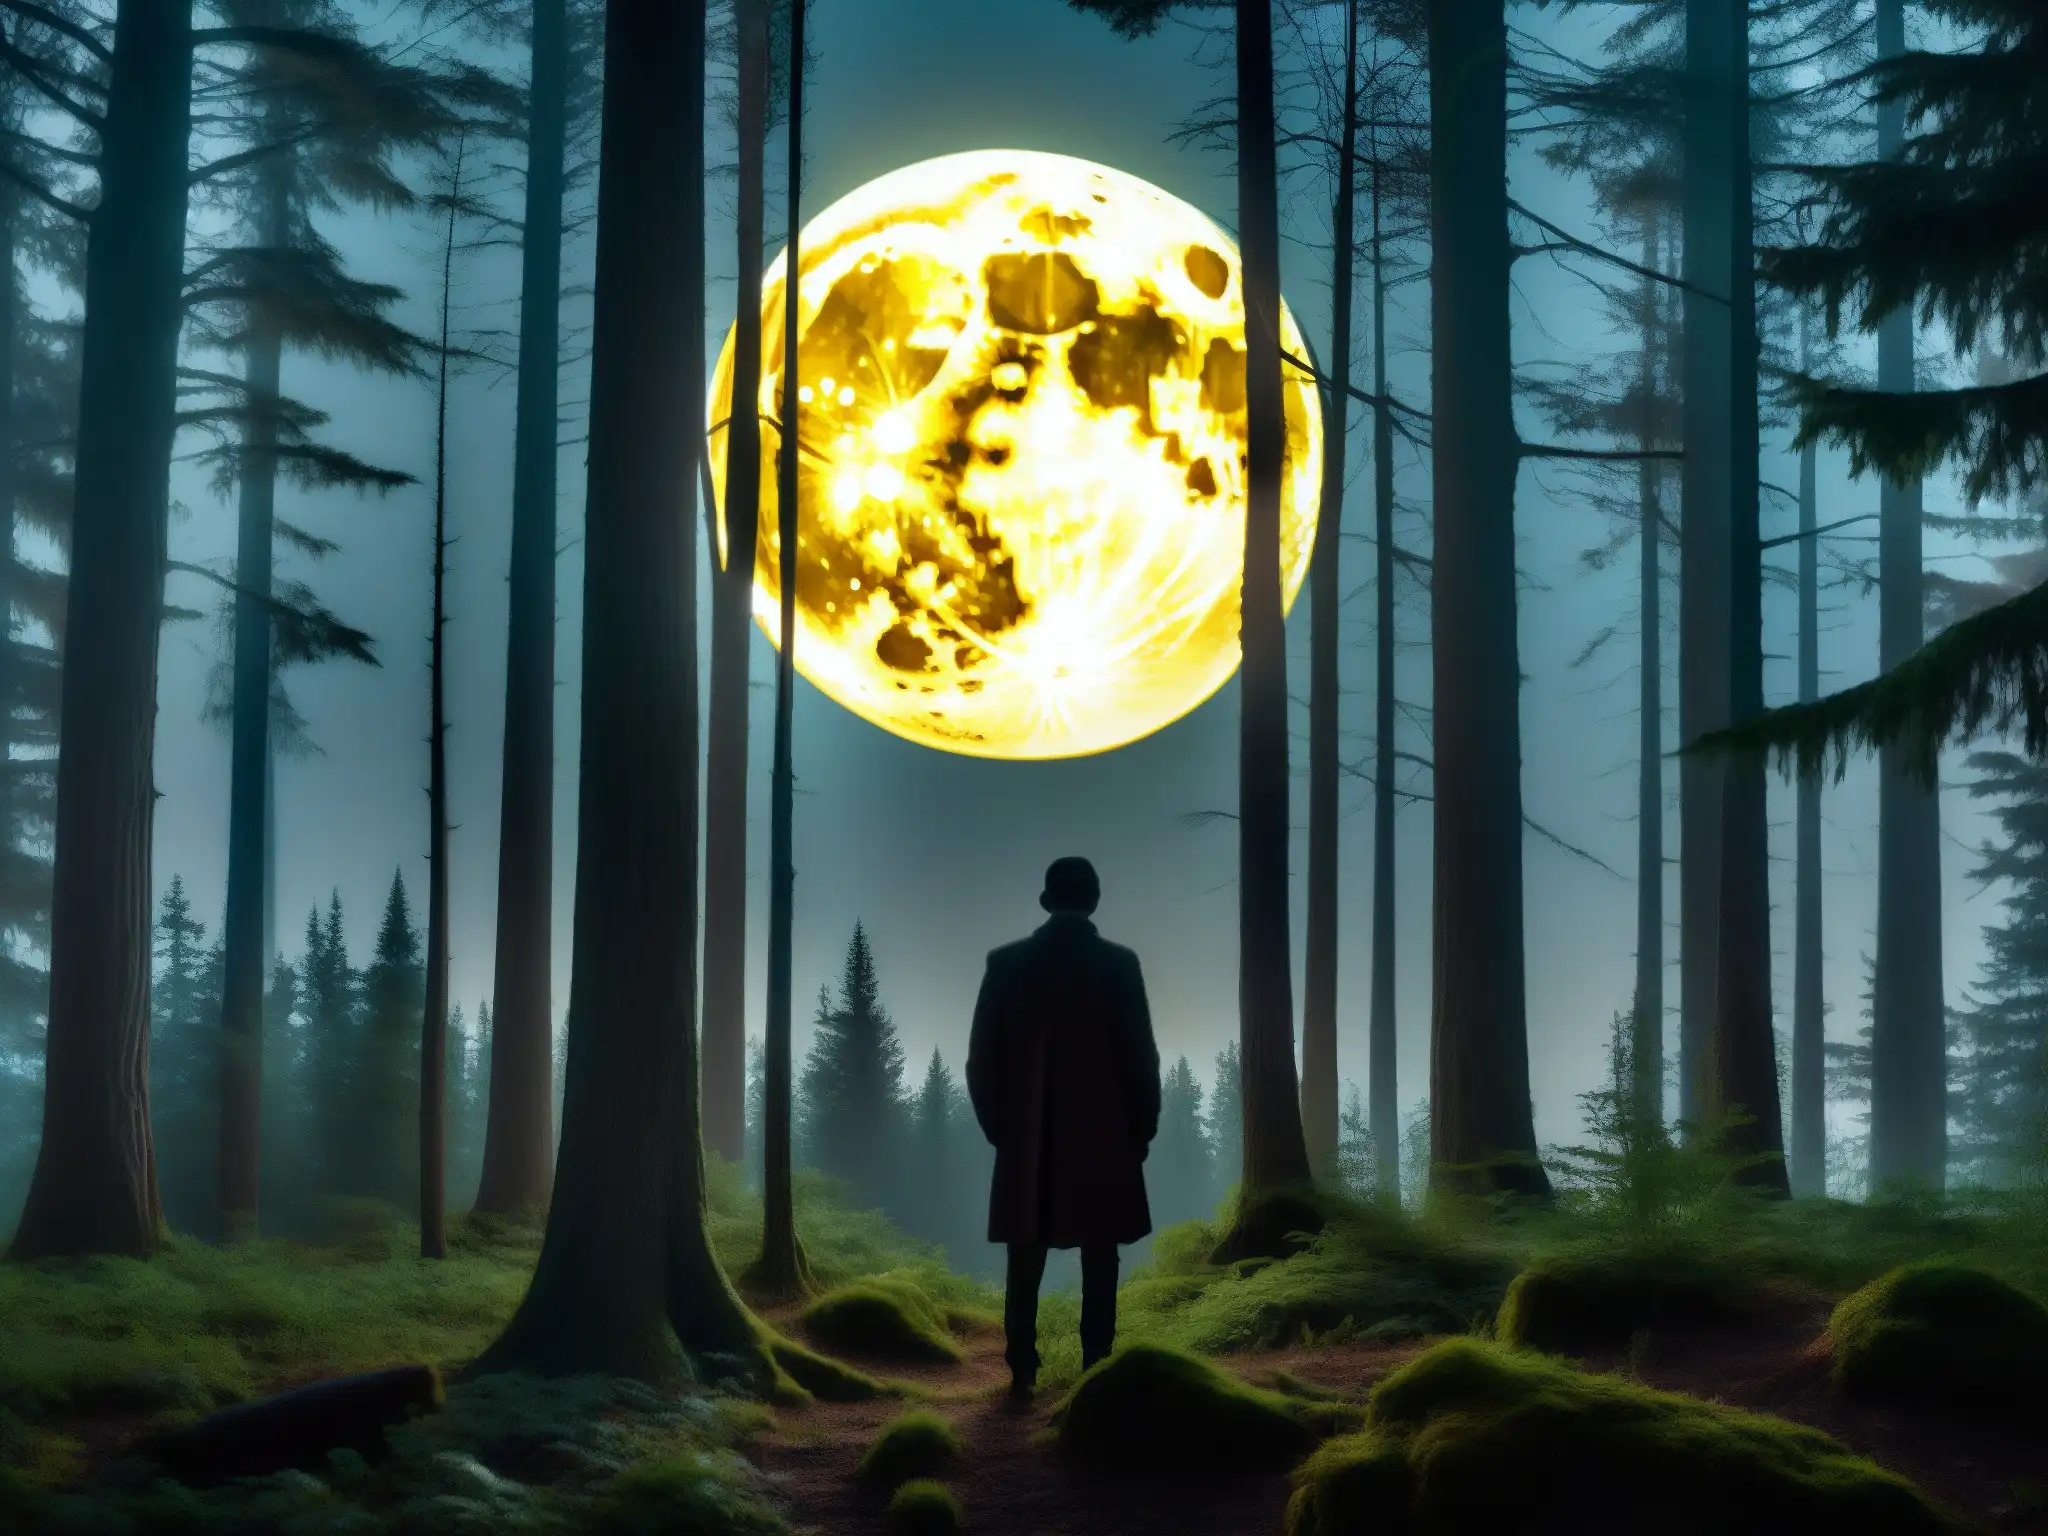 Silueta misteriosa en bosque nocturno iluminado por luna llena, evocando la verdad detrás del Chupacabra